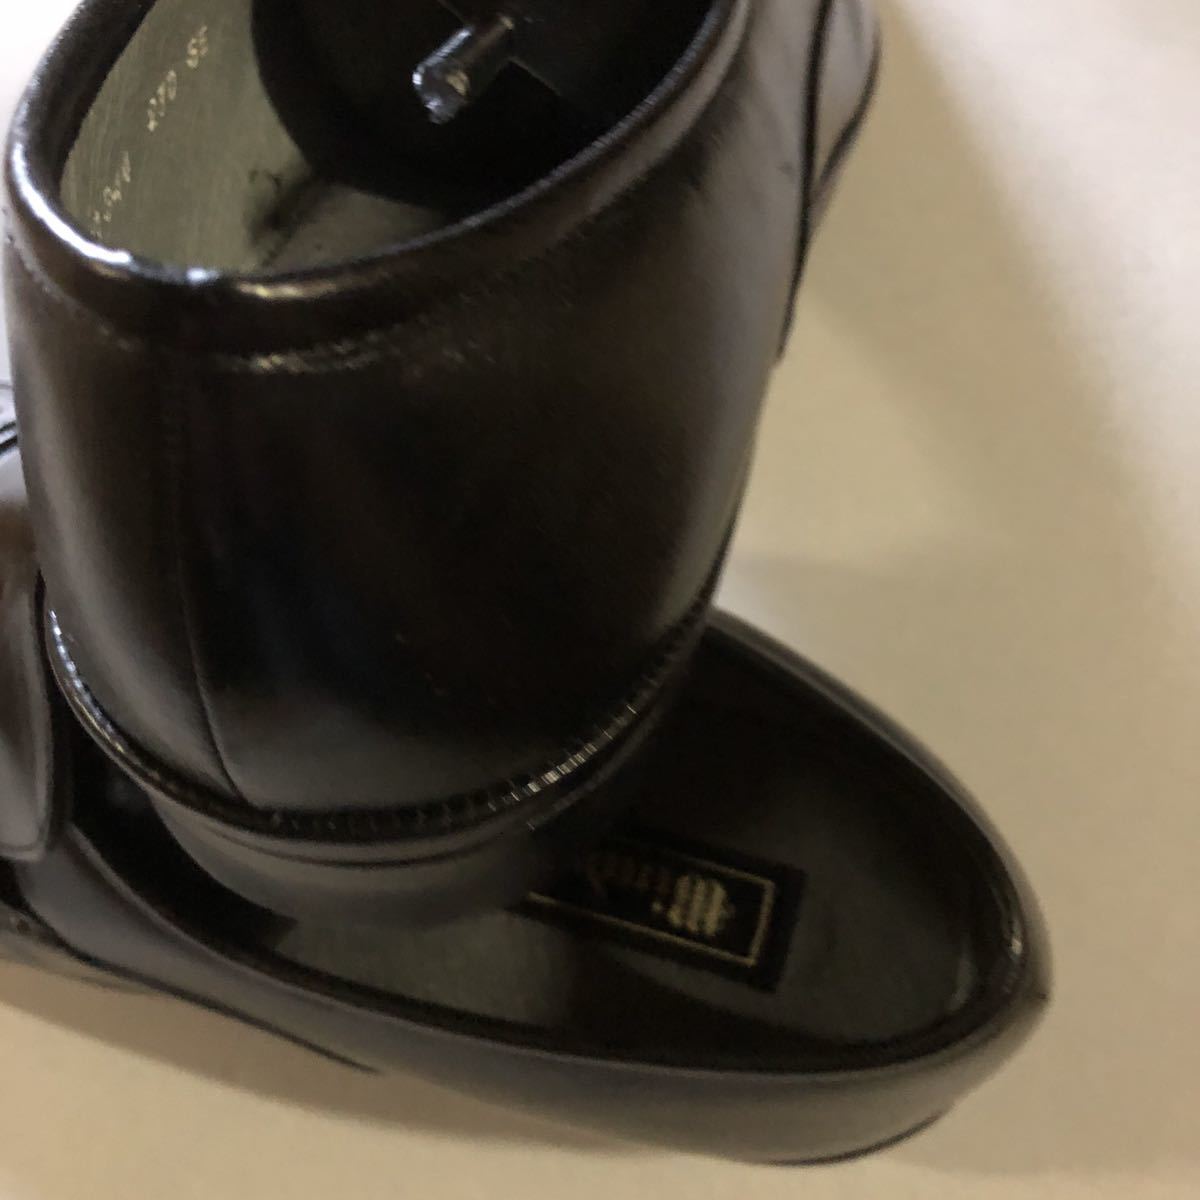 紳士皮靴 本皮 アサヒ製品 日本製 ウィンザー1344 黒色 24cm 3E 9800円の品を1980円にの画像7